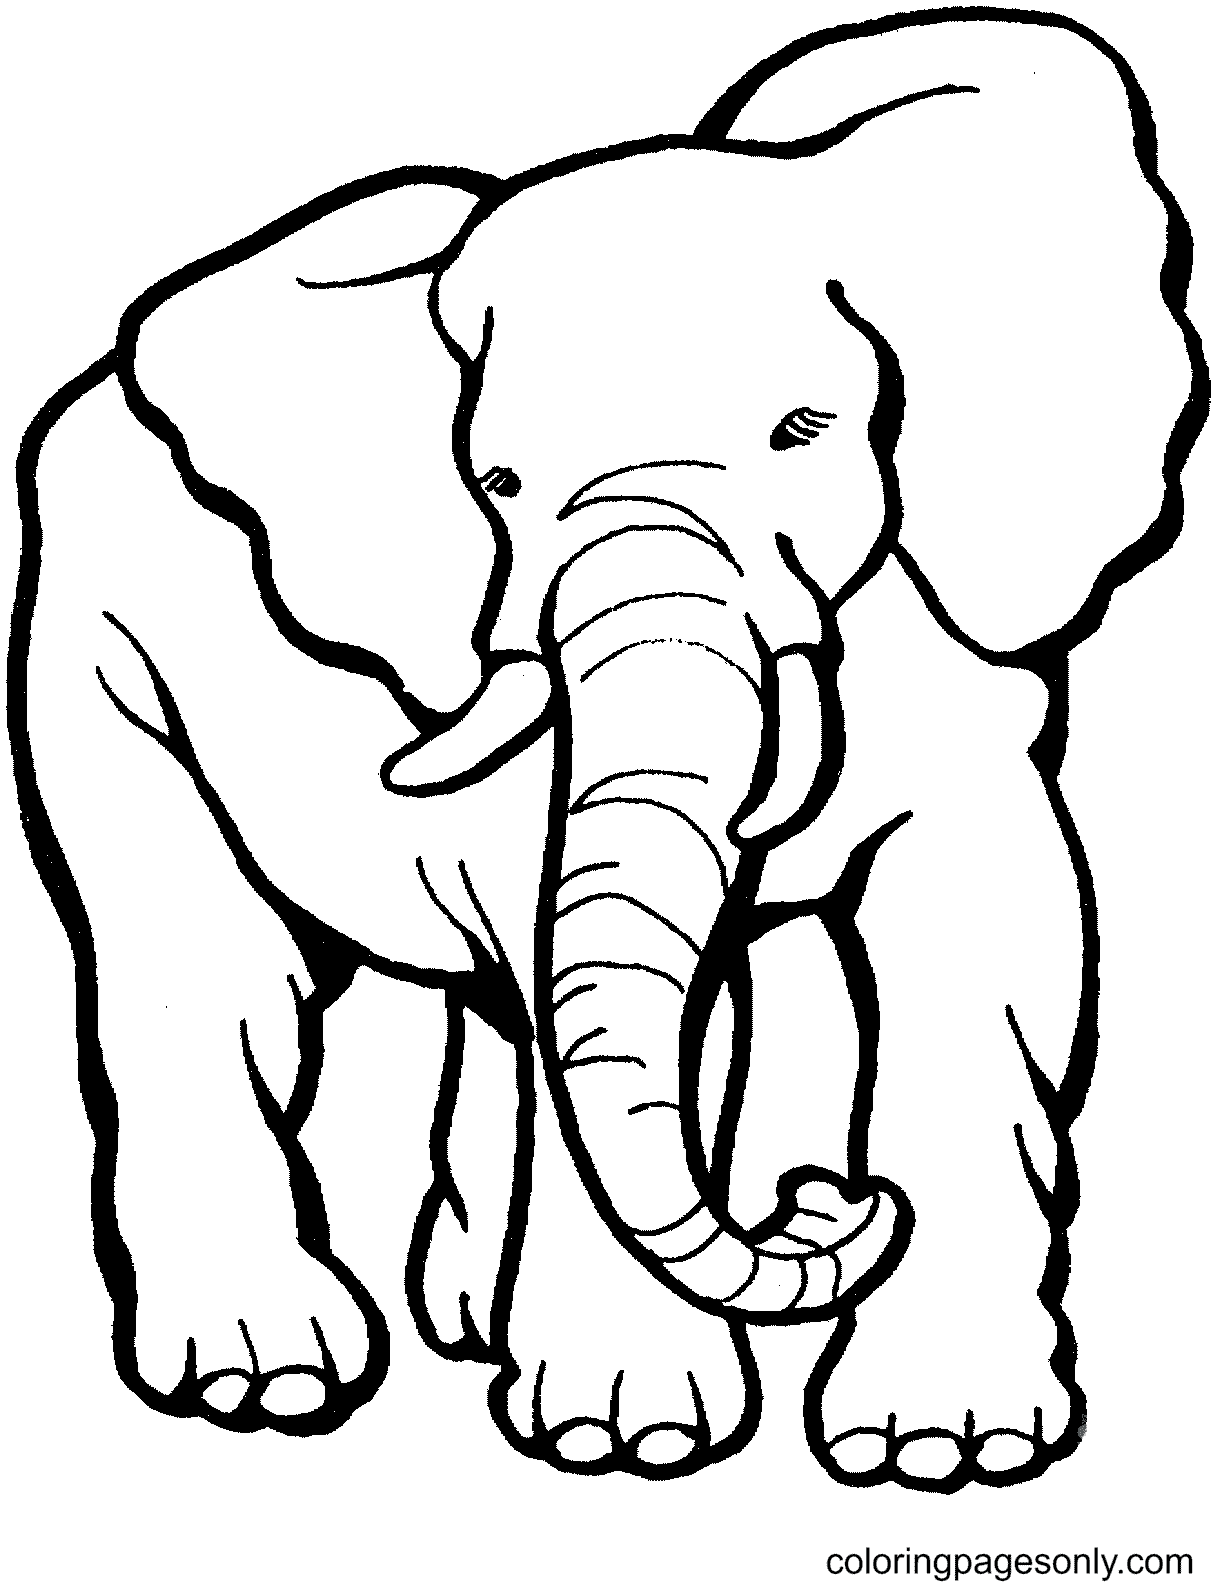 Распечатанный слон из Elephant